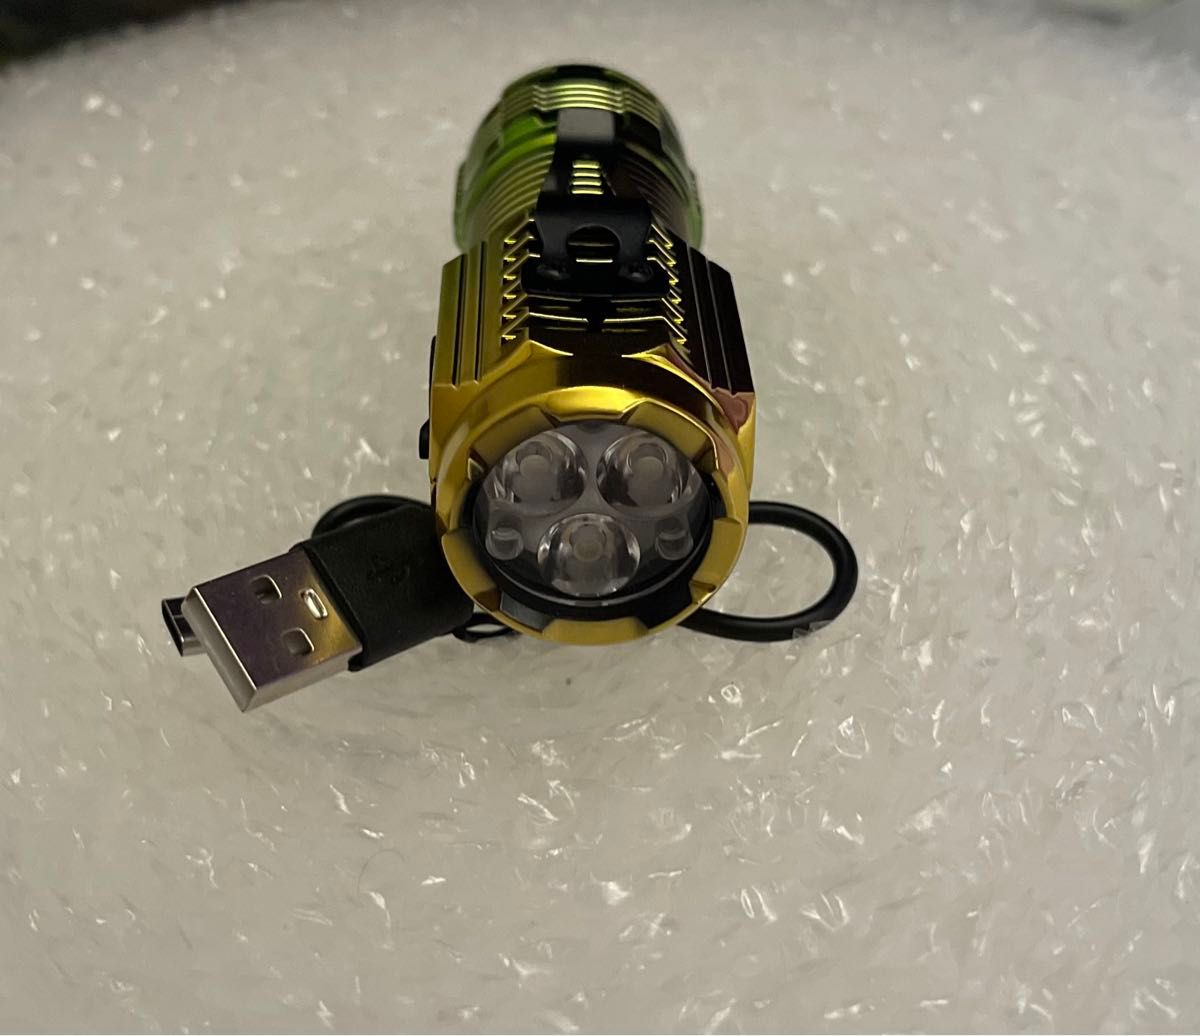 2個セット USB充電式 小型 LEDライト 防水 マグネット付き 軽い41g  高輝度 ハンディライト 懐中電灯 